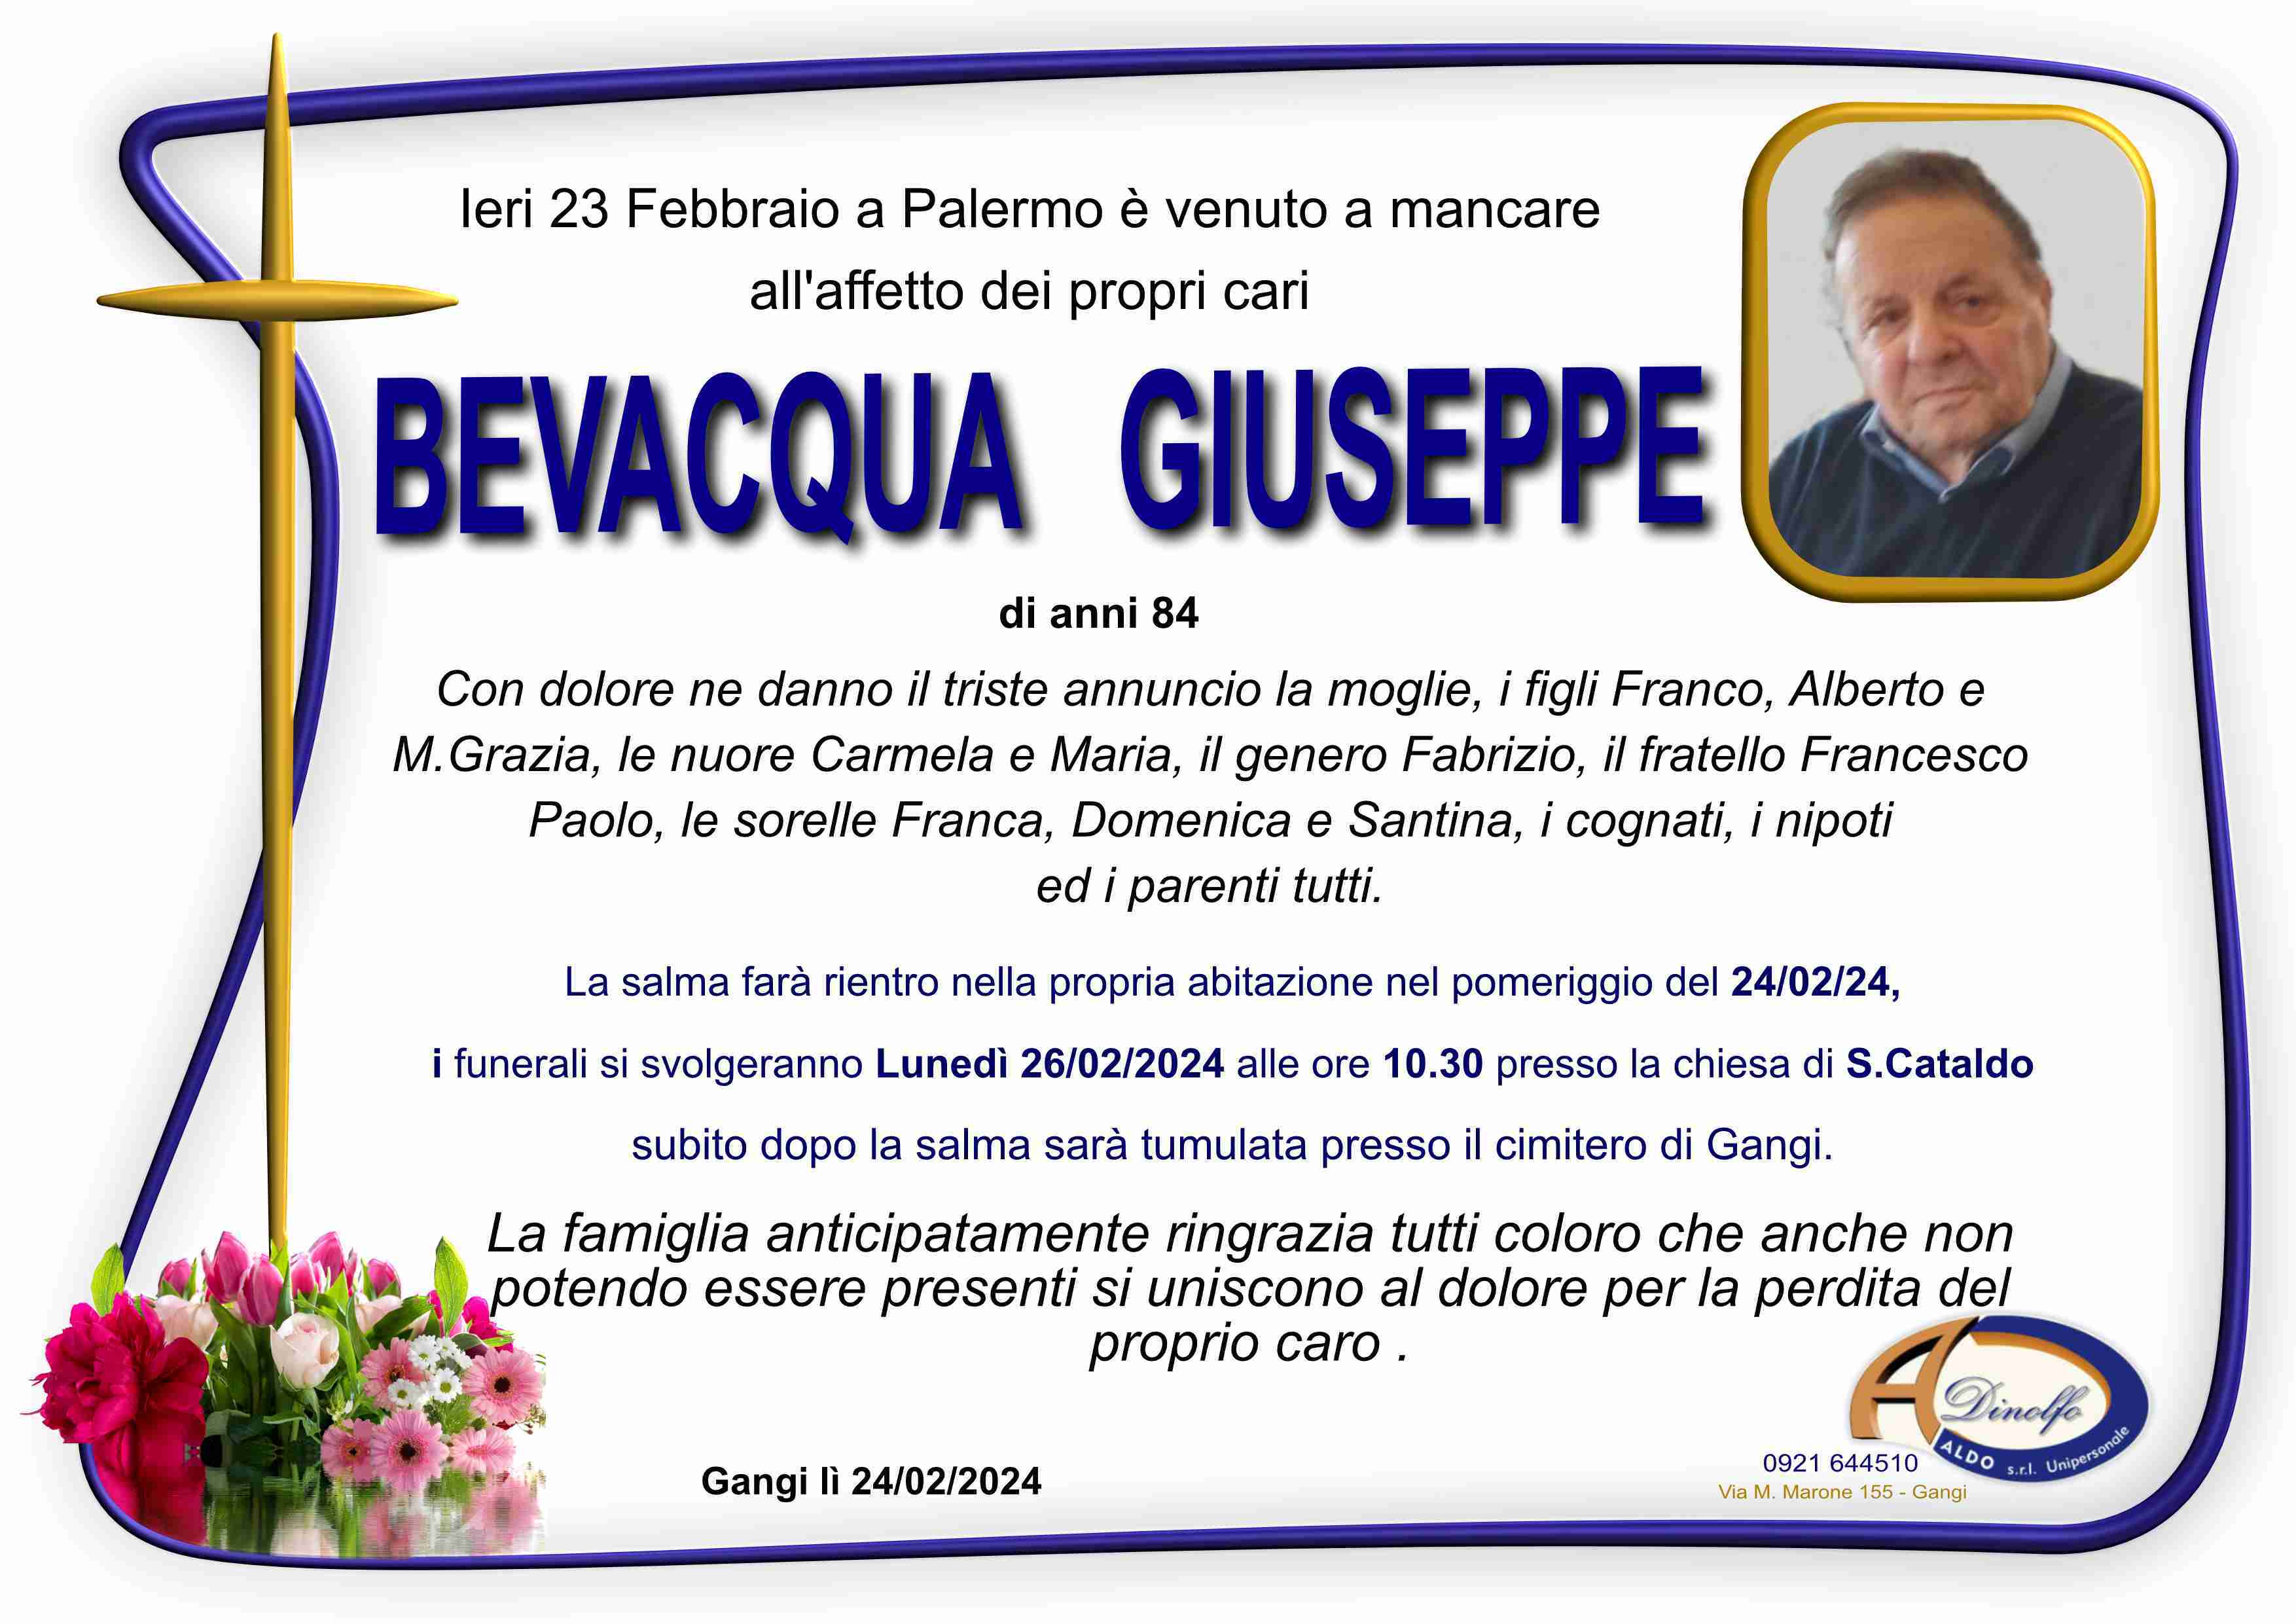 Giuseppe Bevacqua